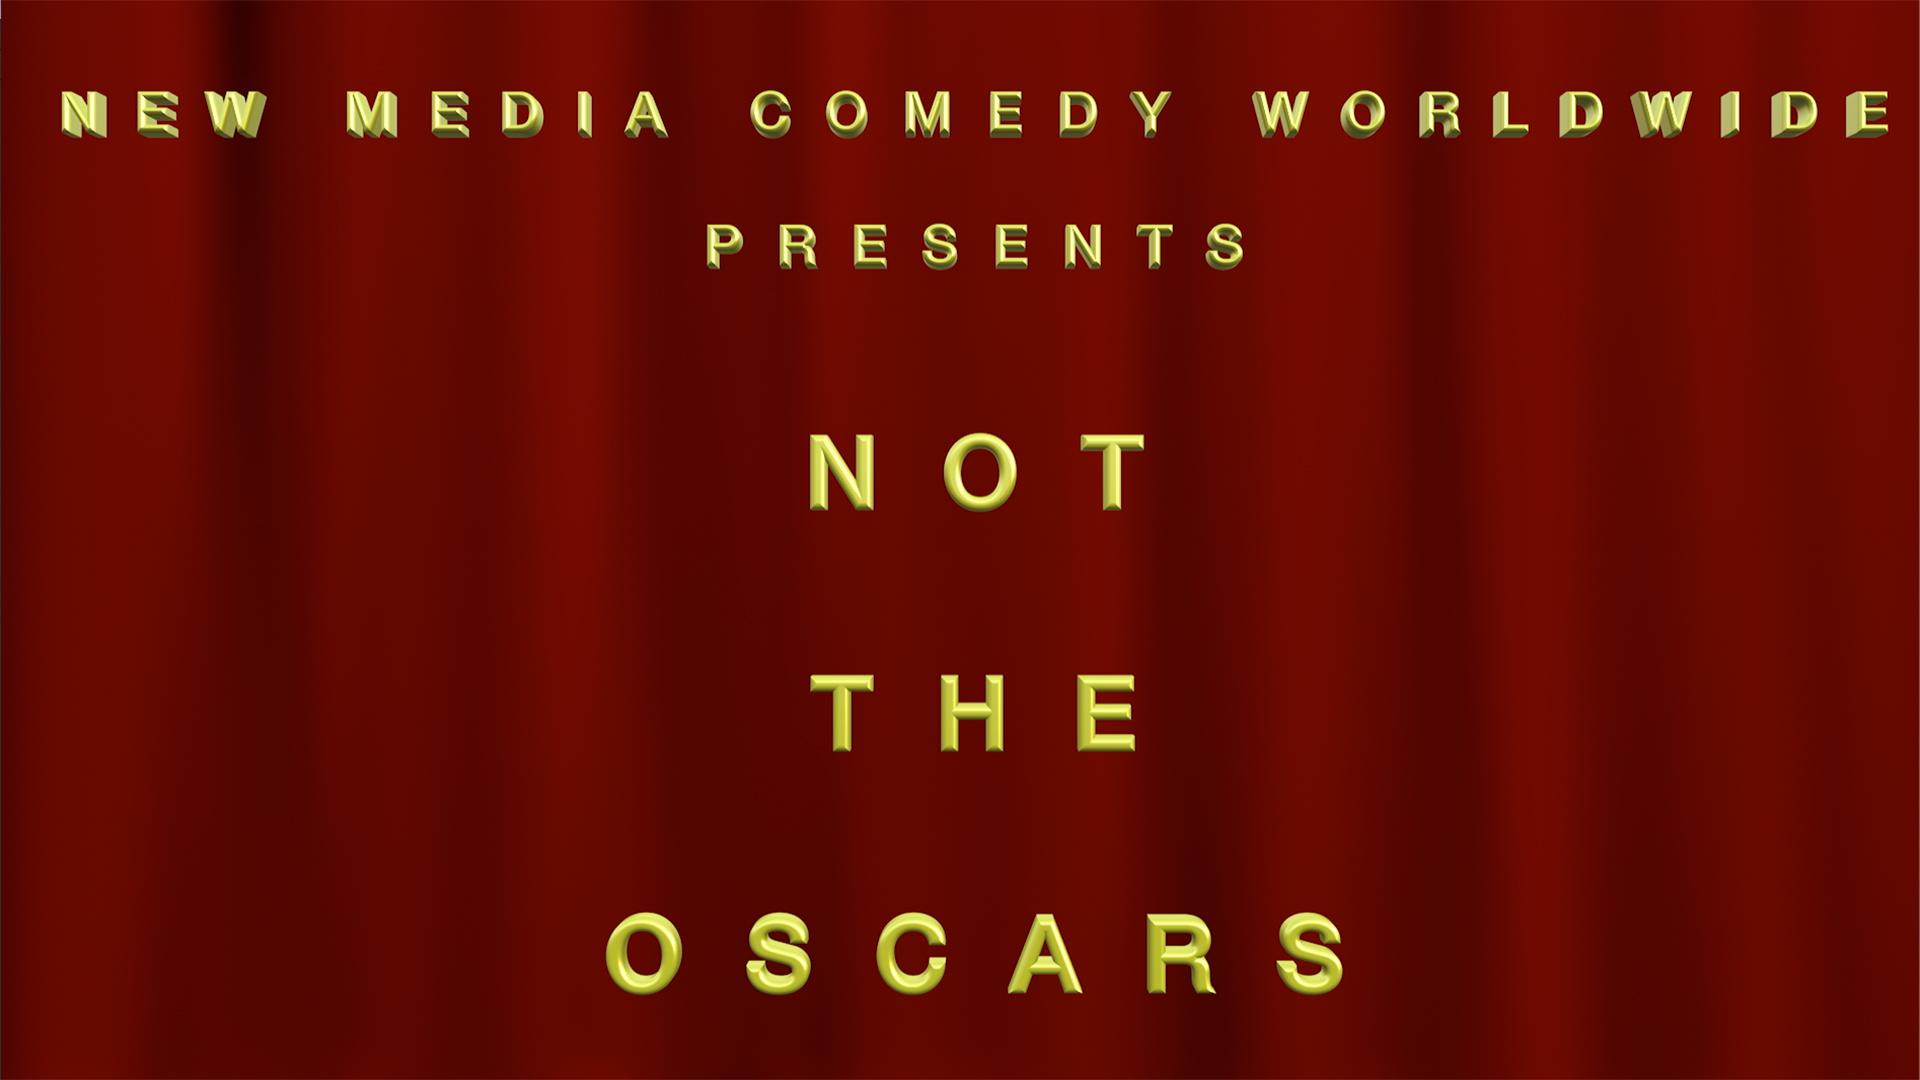 Not the Oscars